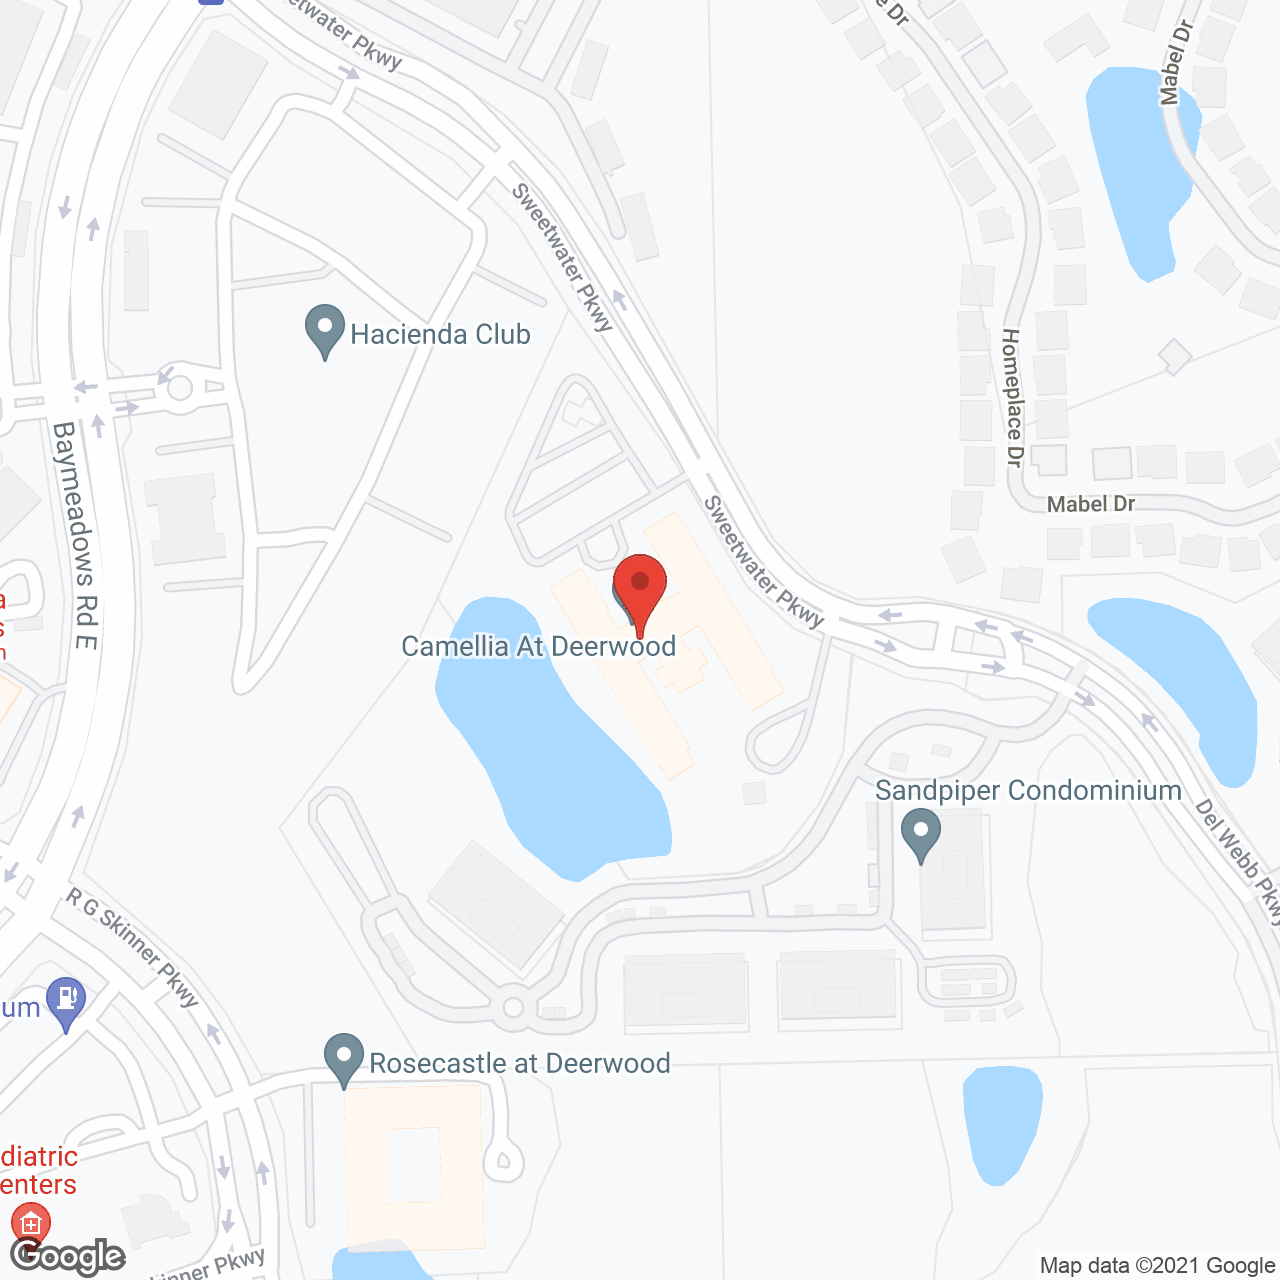 Camellia at Deerwood in google map